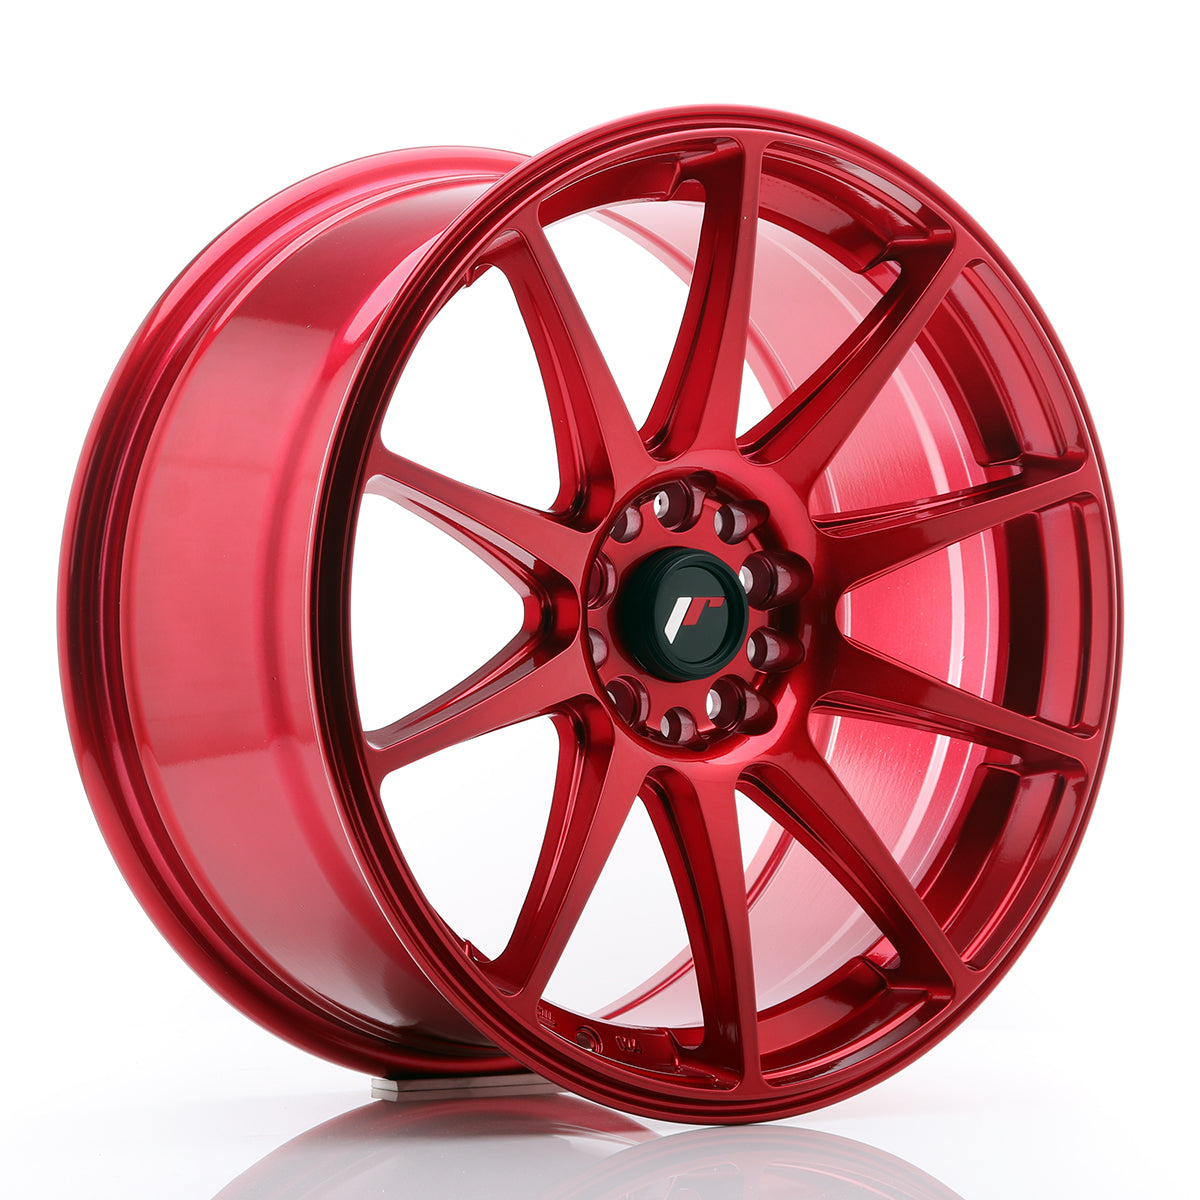 JR Wheels JR11 18x8,5 ET30 5x114/120 Platinum Red